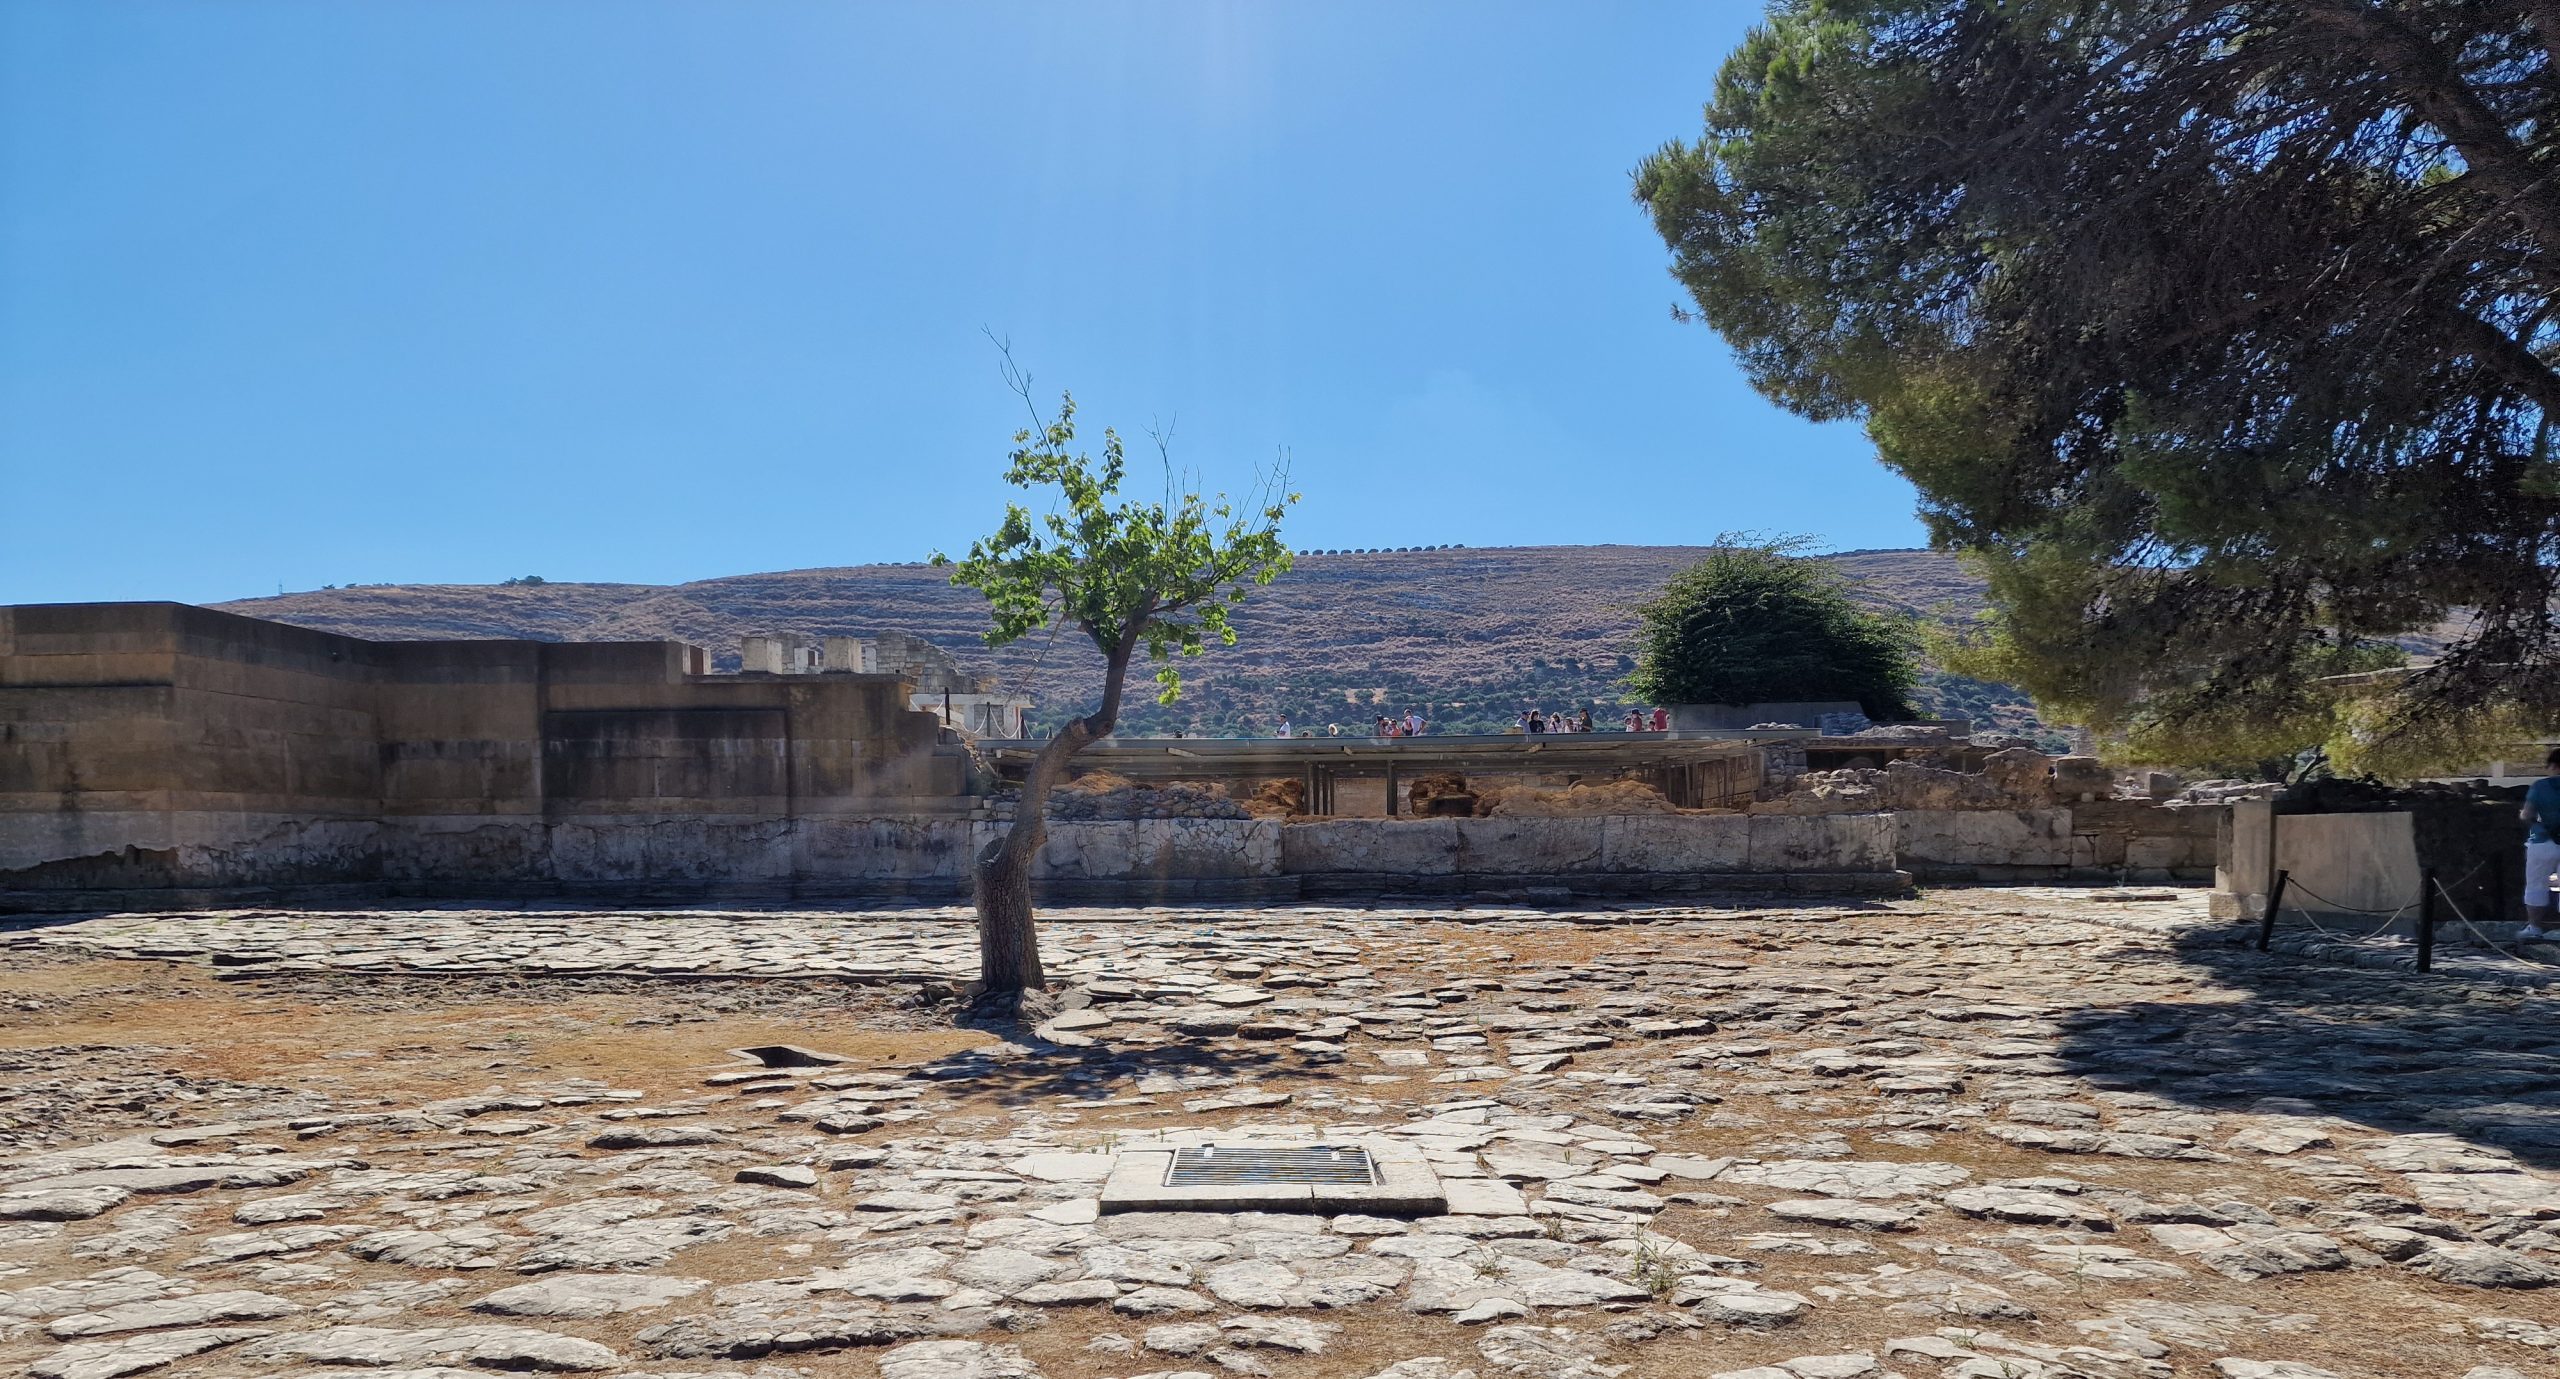 Baum im Palast von Knossos